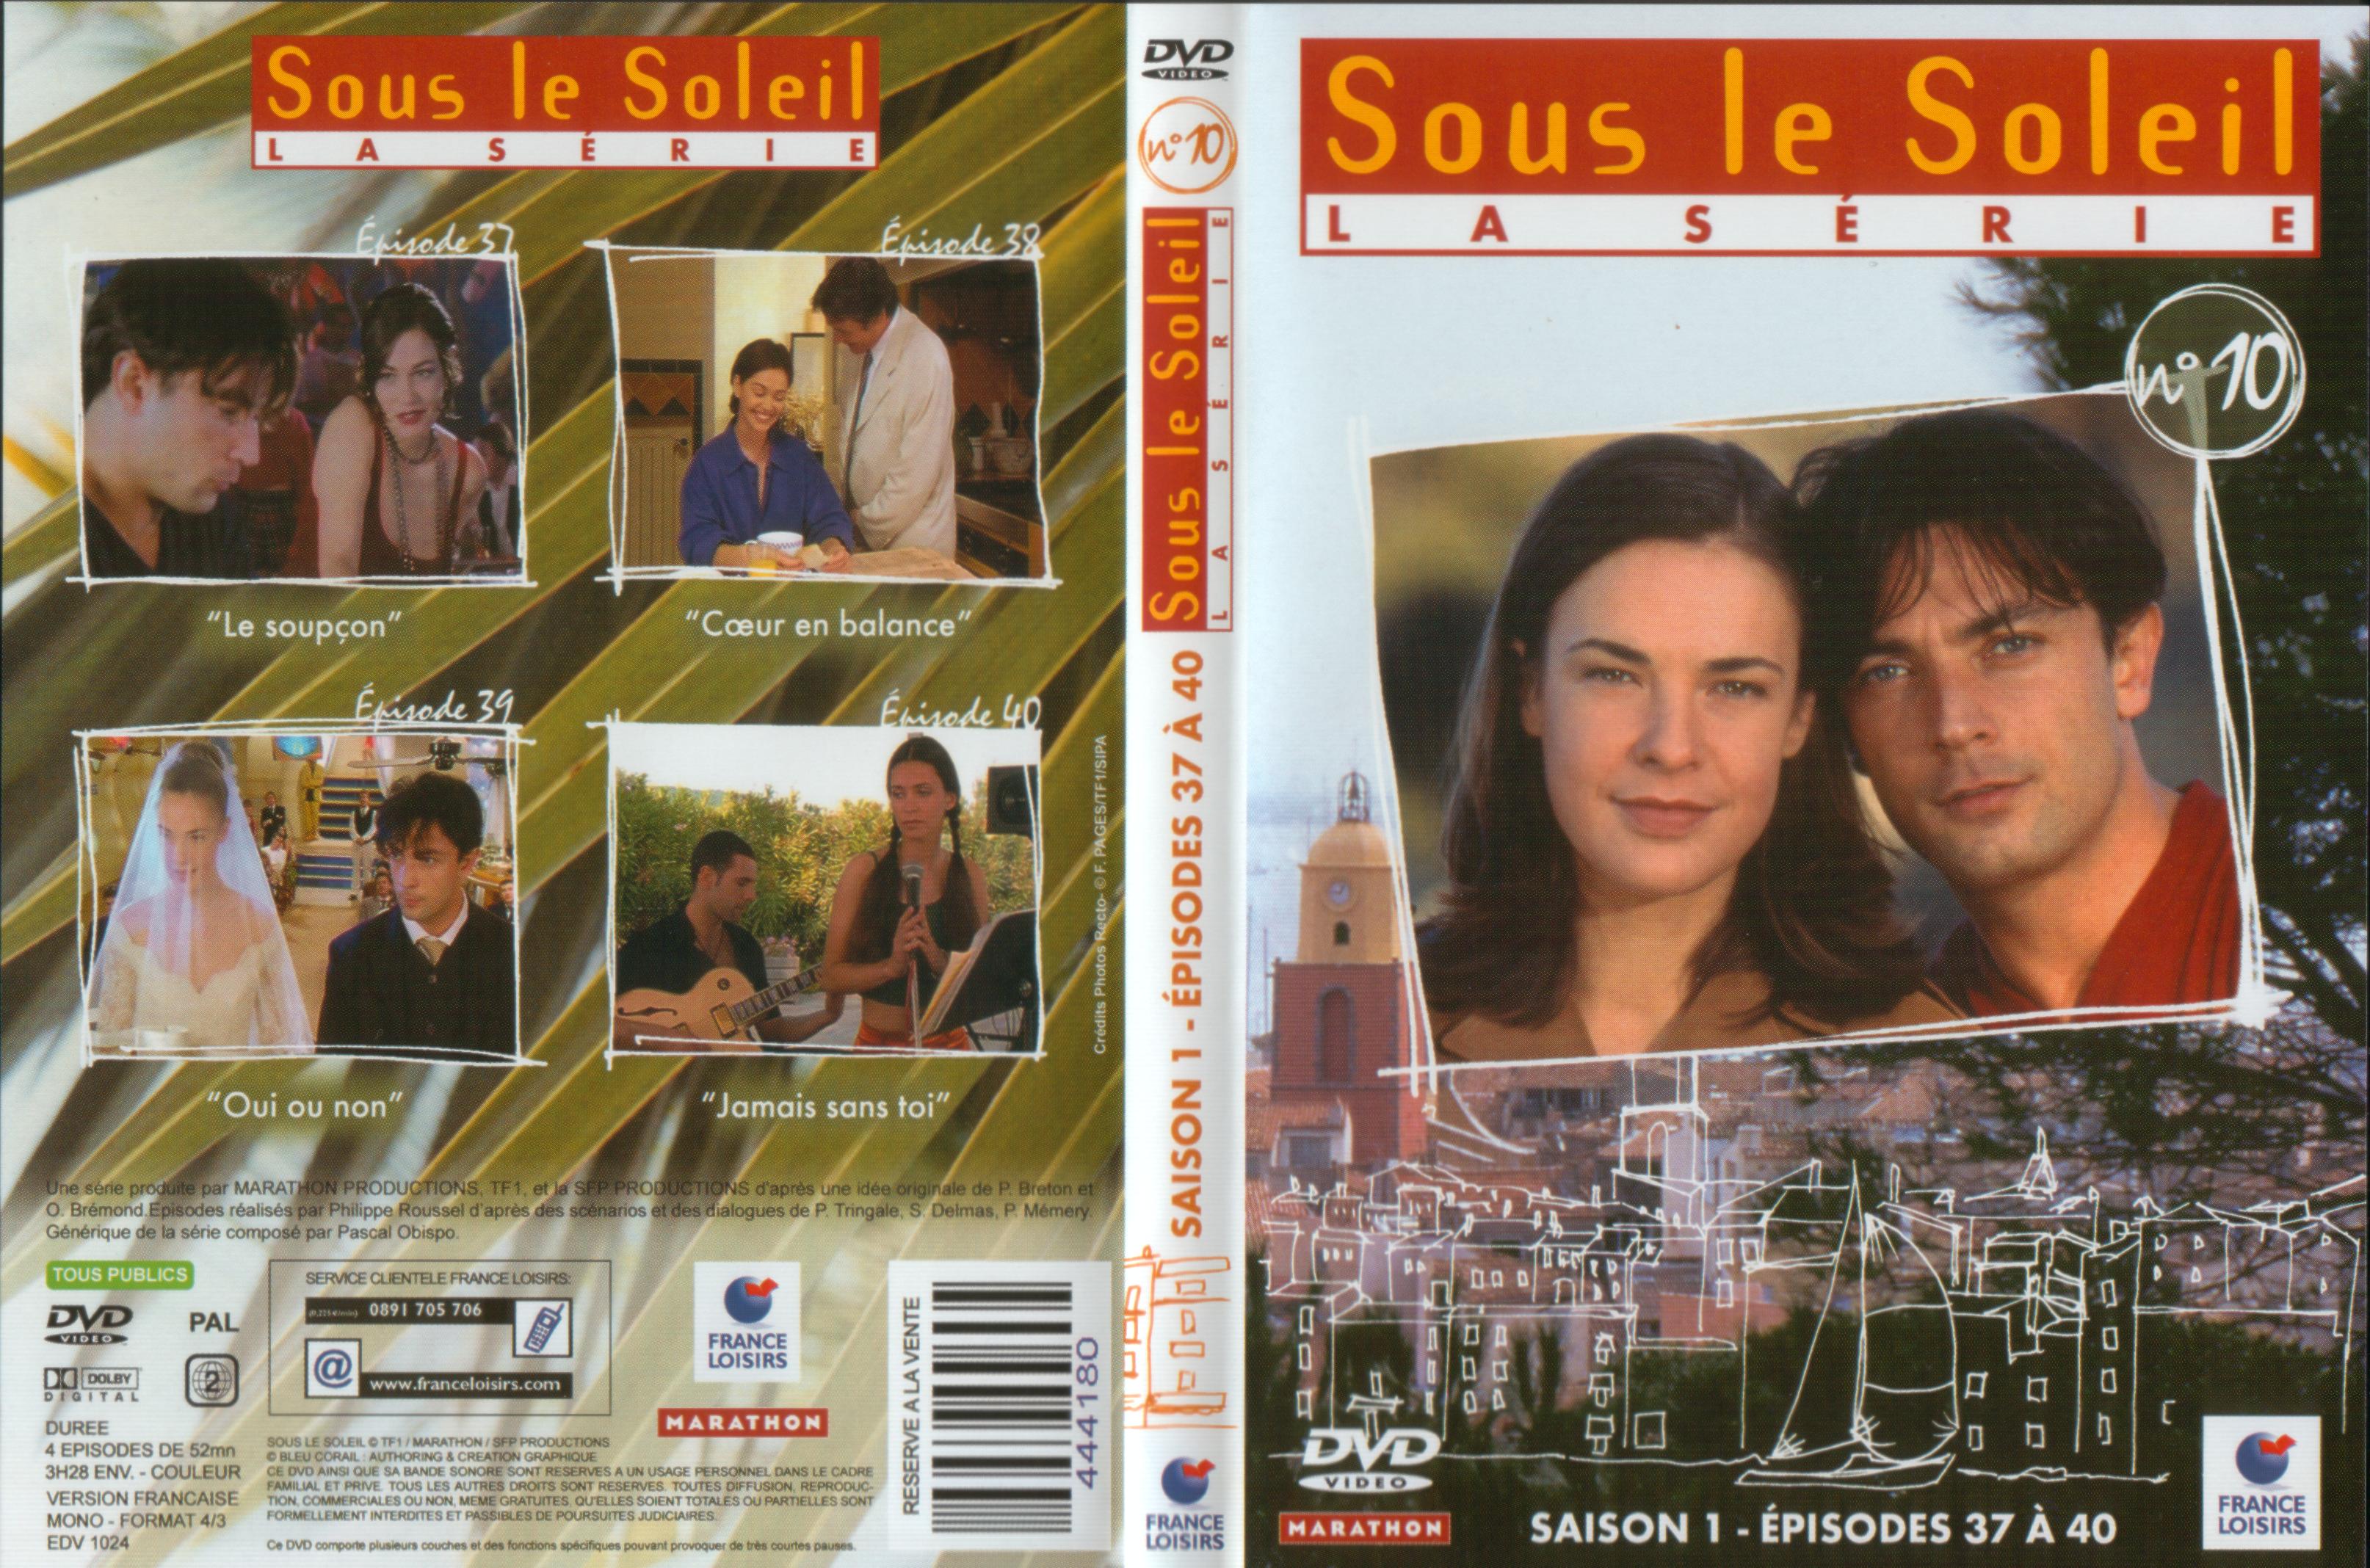 Jaquette DVD Sous le soleil saison 1 vol 10